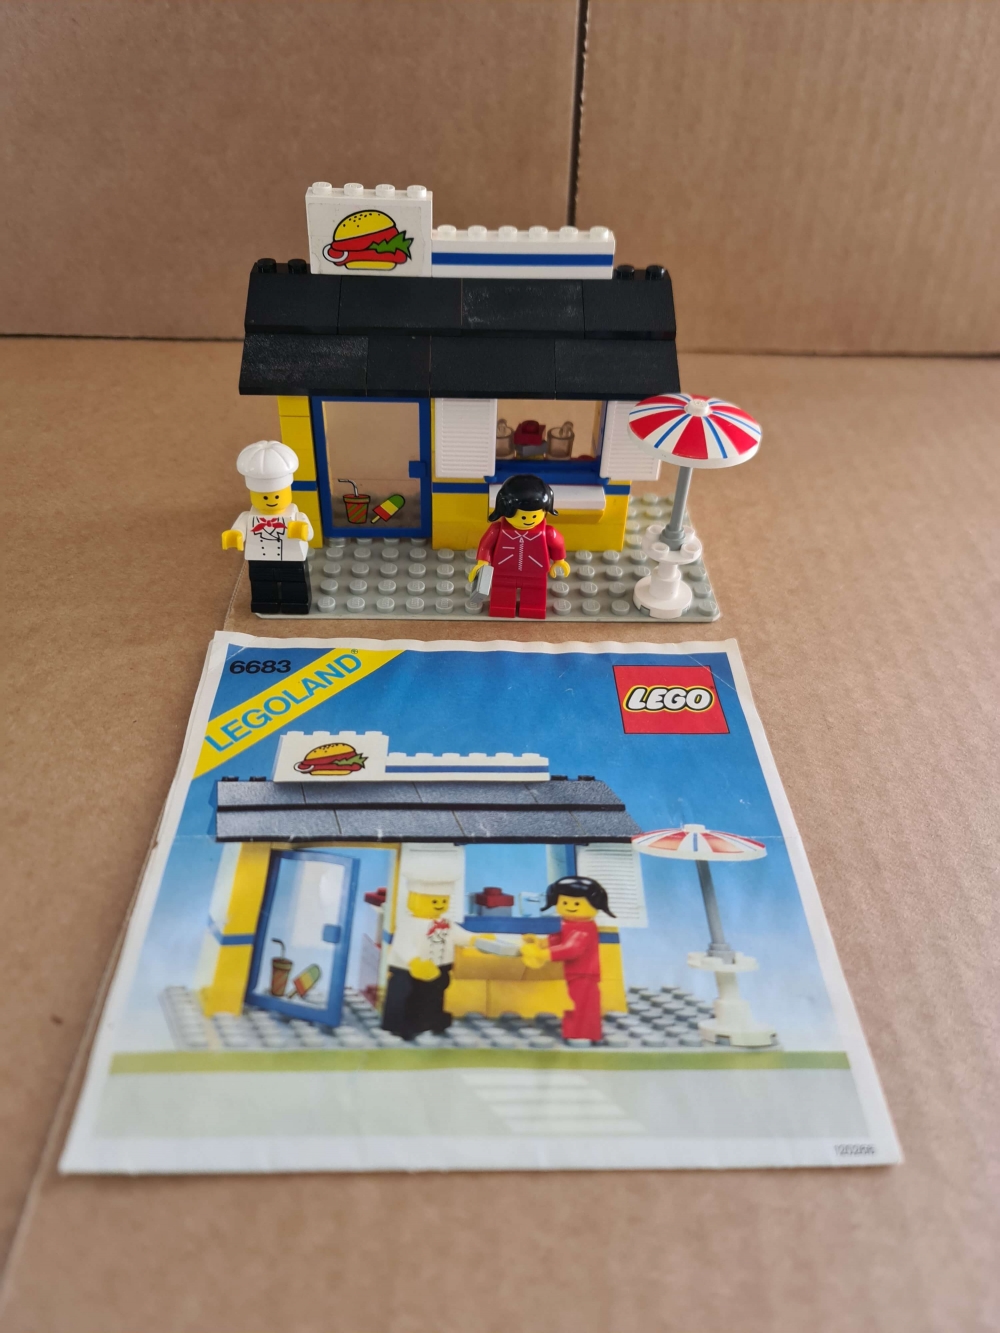 Sett 6683 fra Lego Classic Town serien

Fint komplett sett med manual. Alle klistremerker på. Ikke helt perfekt burgermerke.
Noe støv/møkk på taket.
